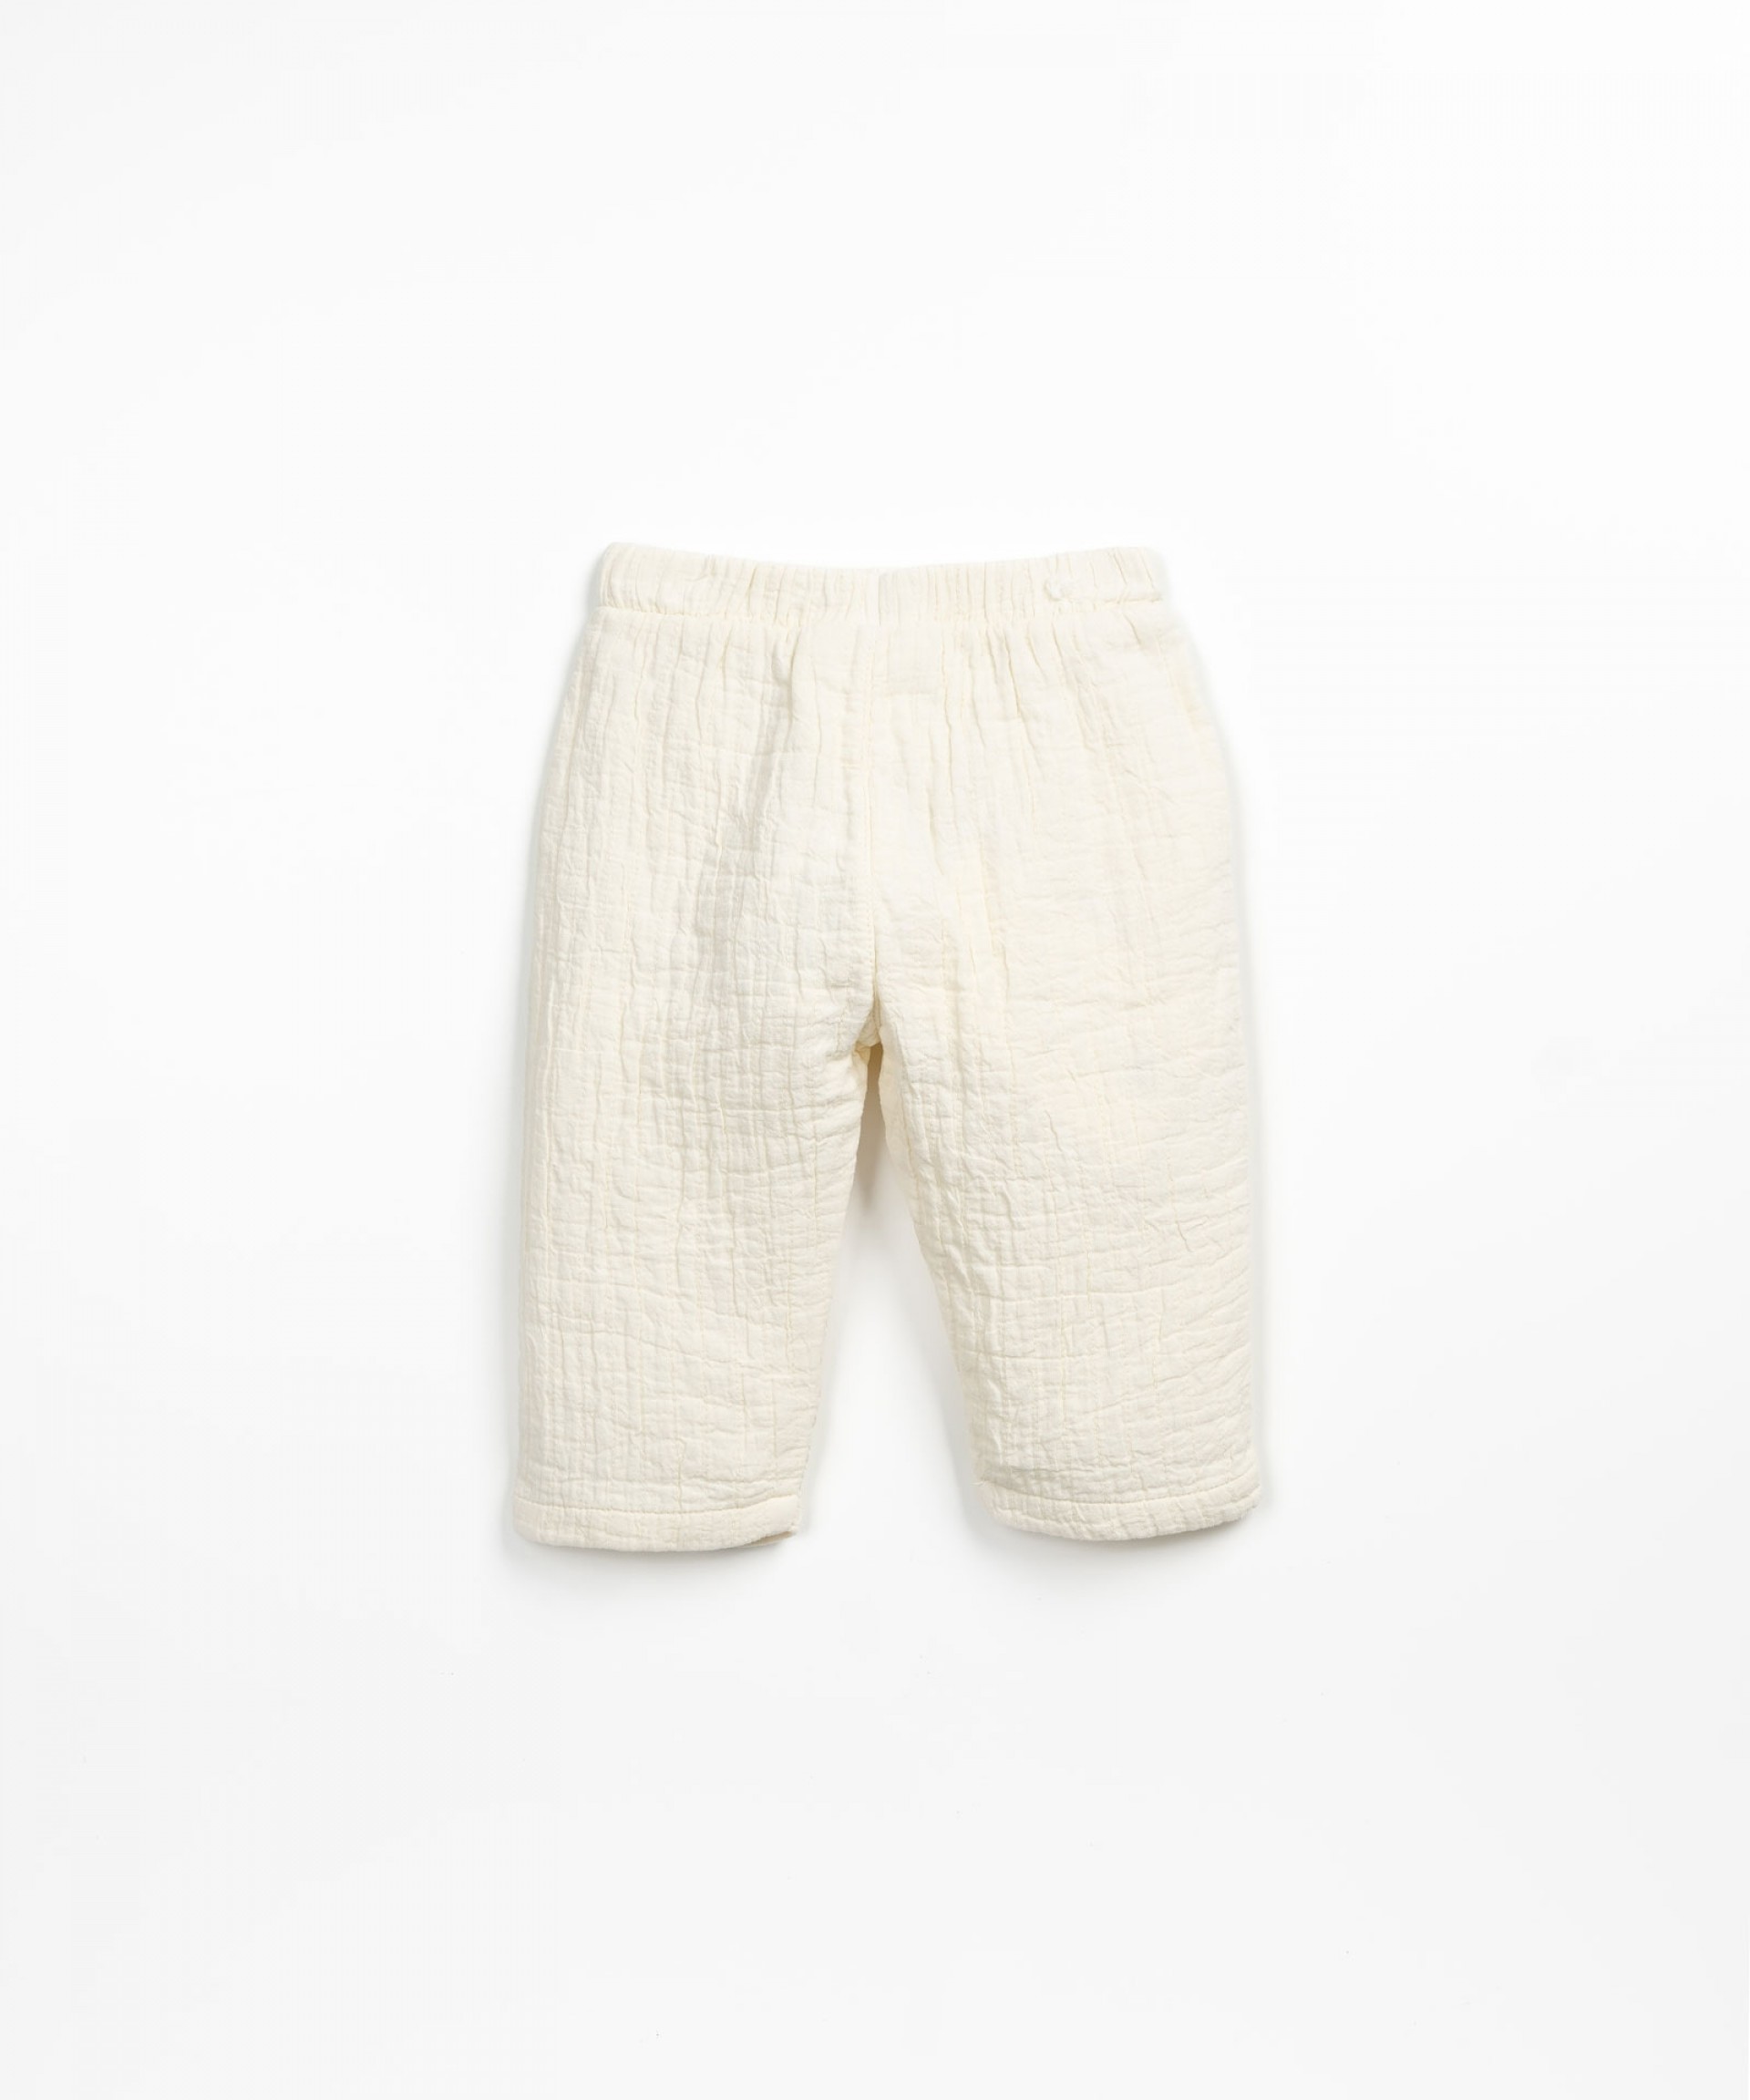 Pantaloni con cordino decorativo | Textile Art